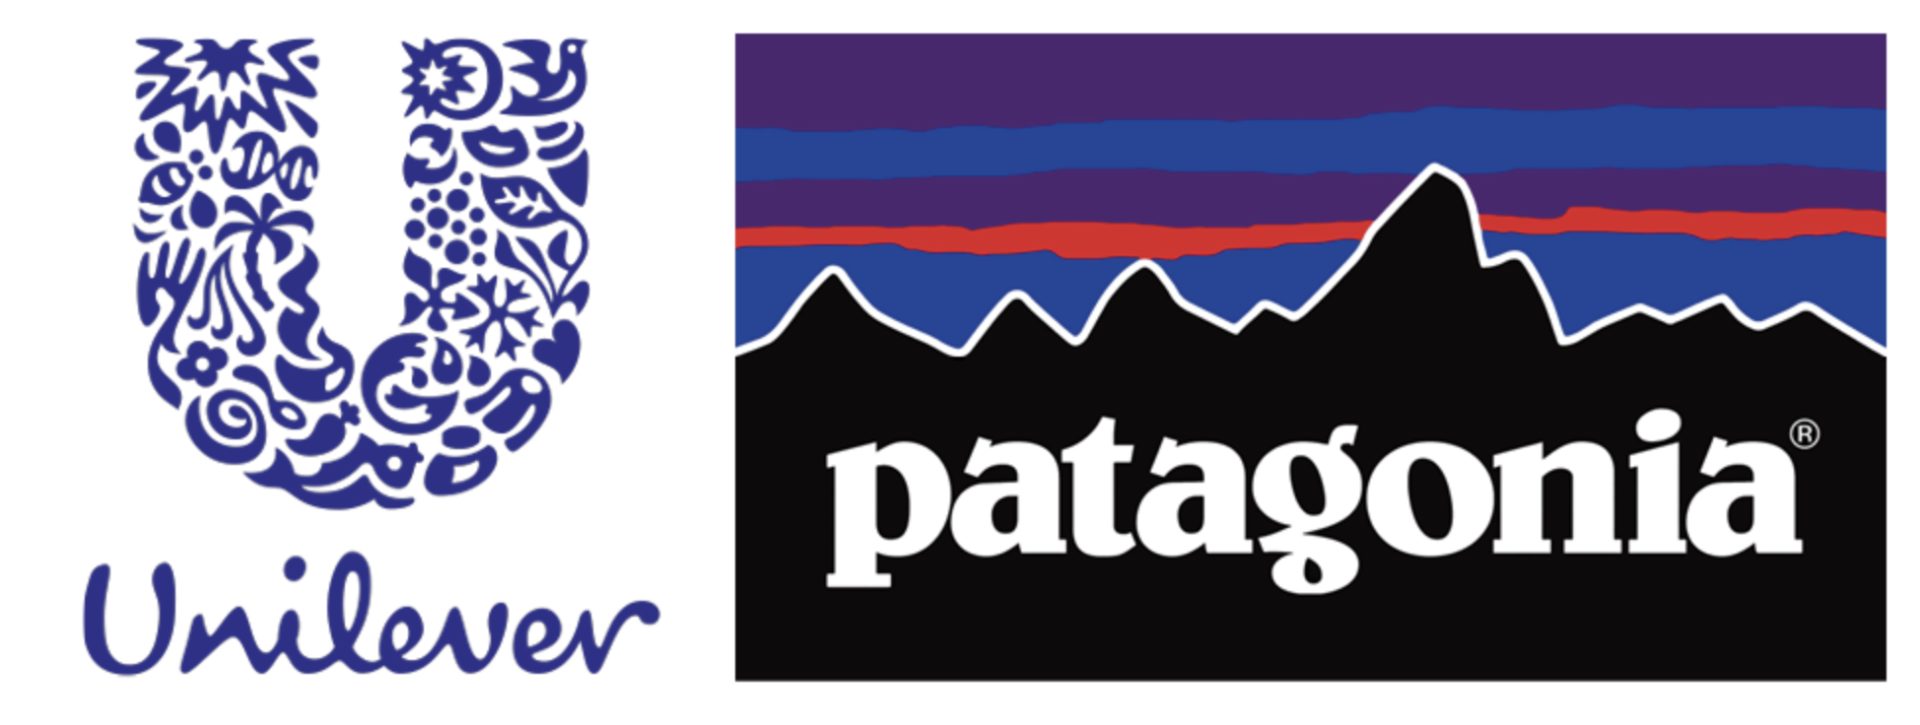 Patagonia unilever